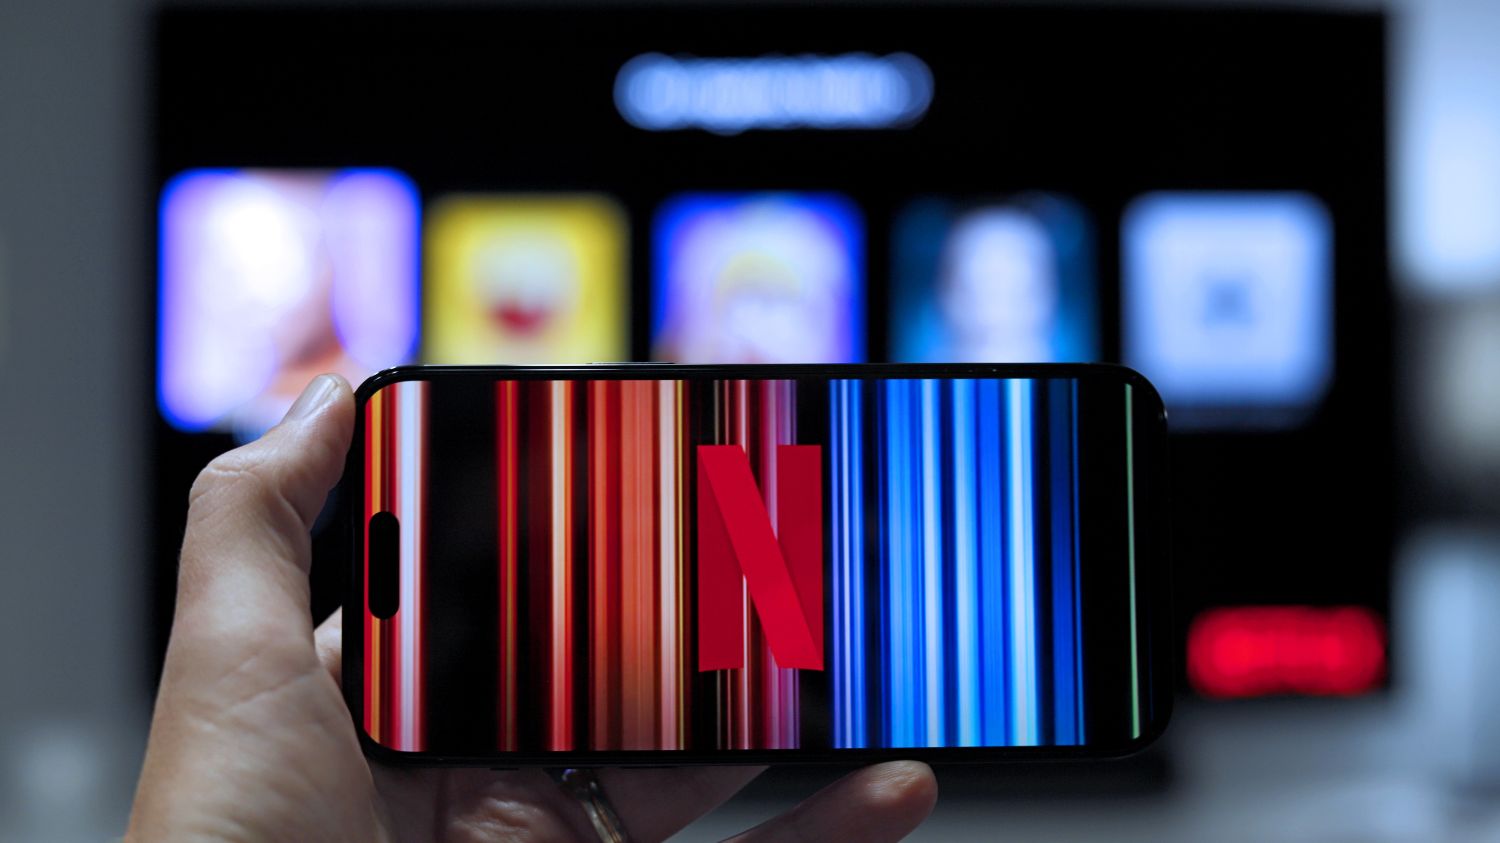 Partager ses codes Netflix : les règles se durcissent